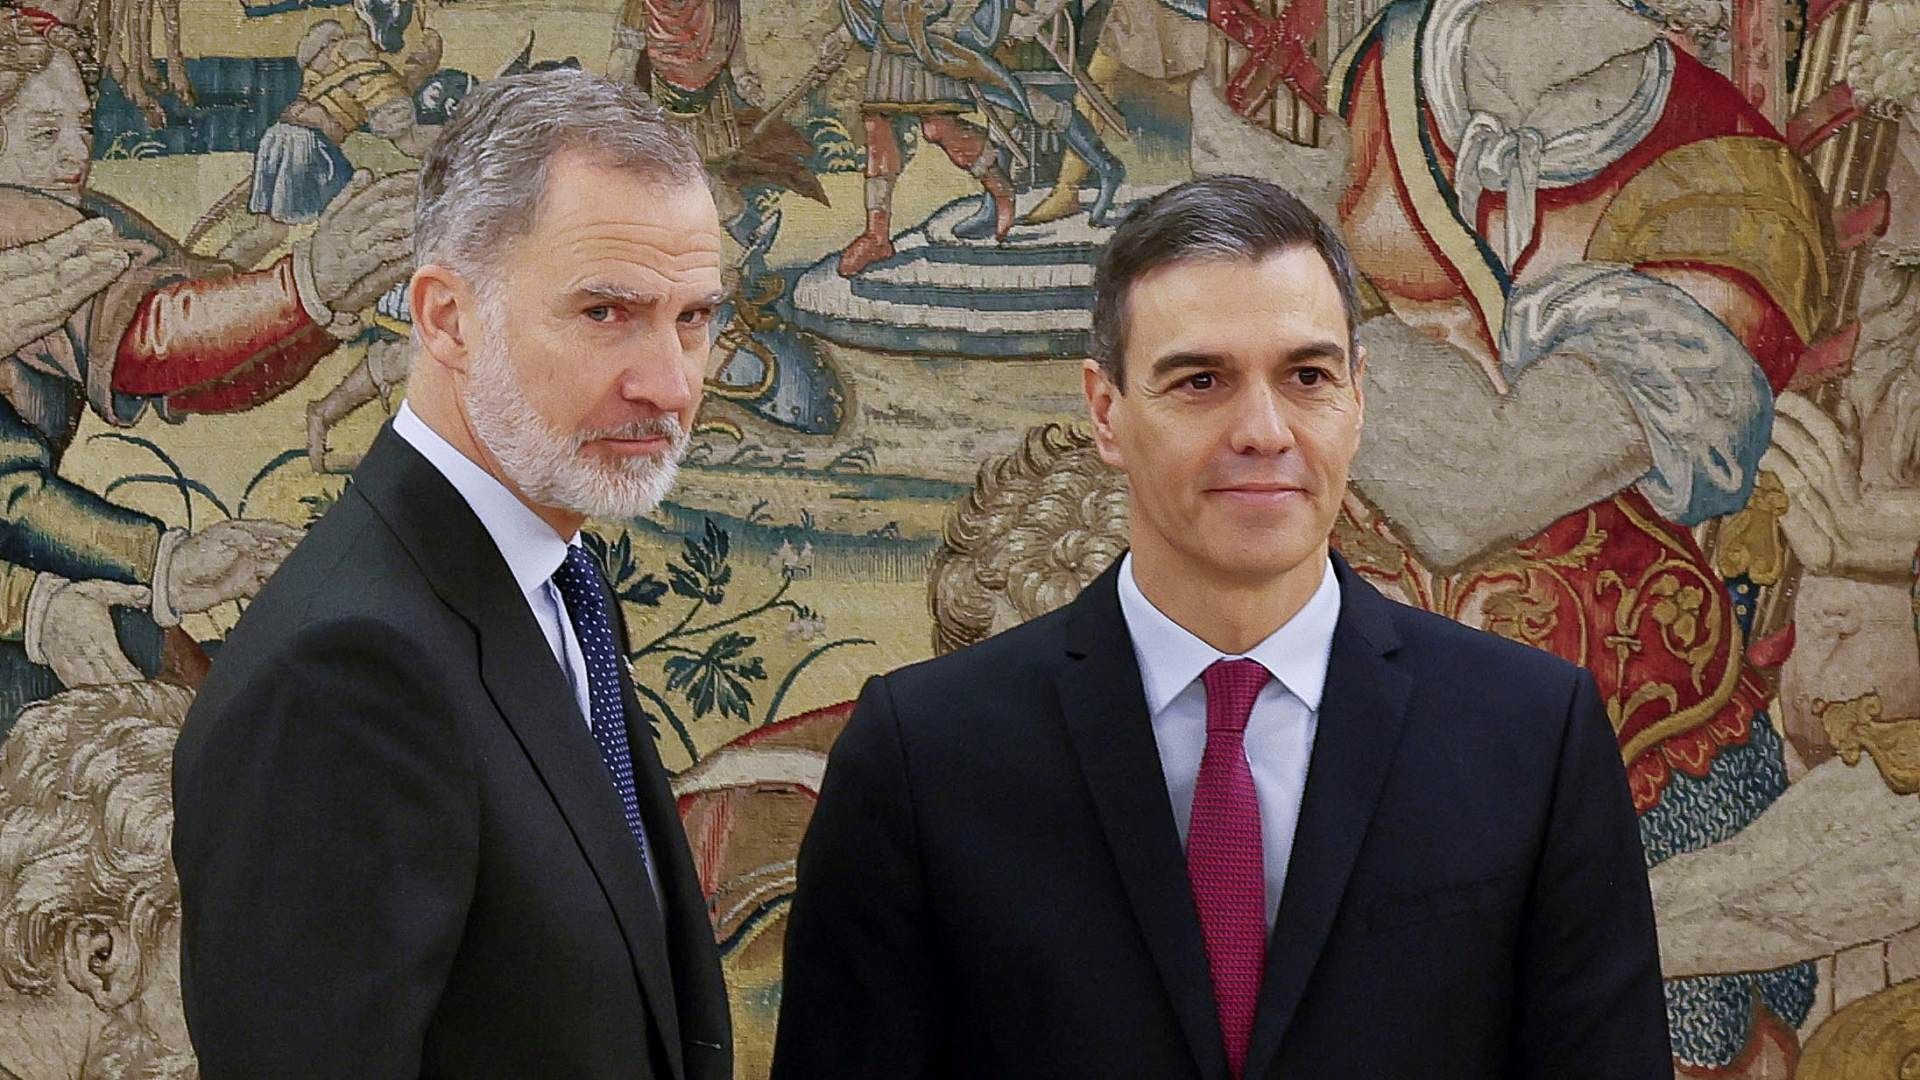 Pedro Sánchez realiza juramento ante Rey Felipe VI y Constitución de España